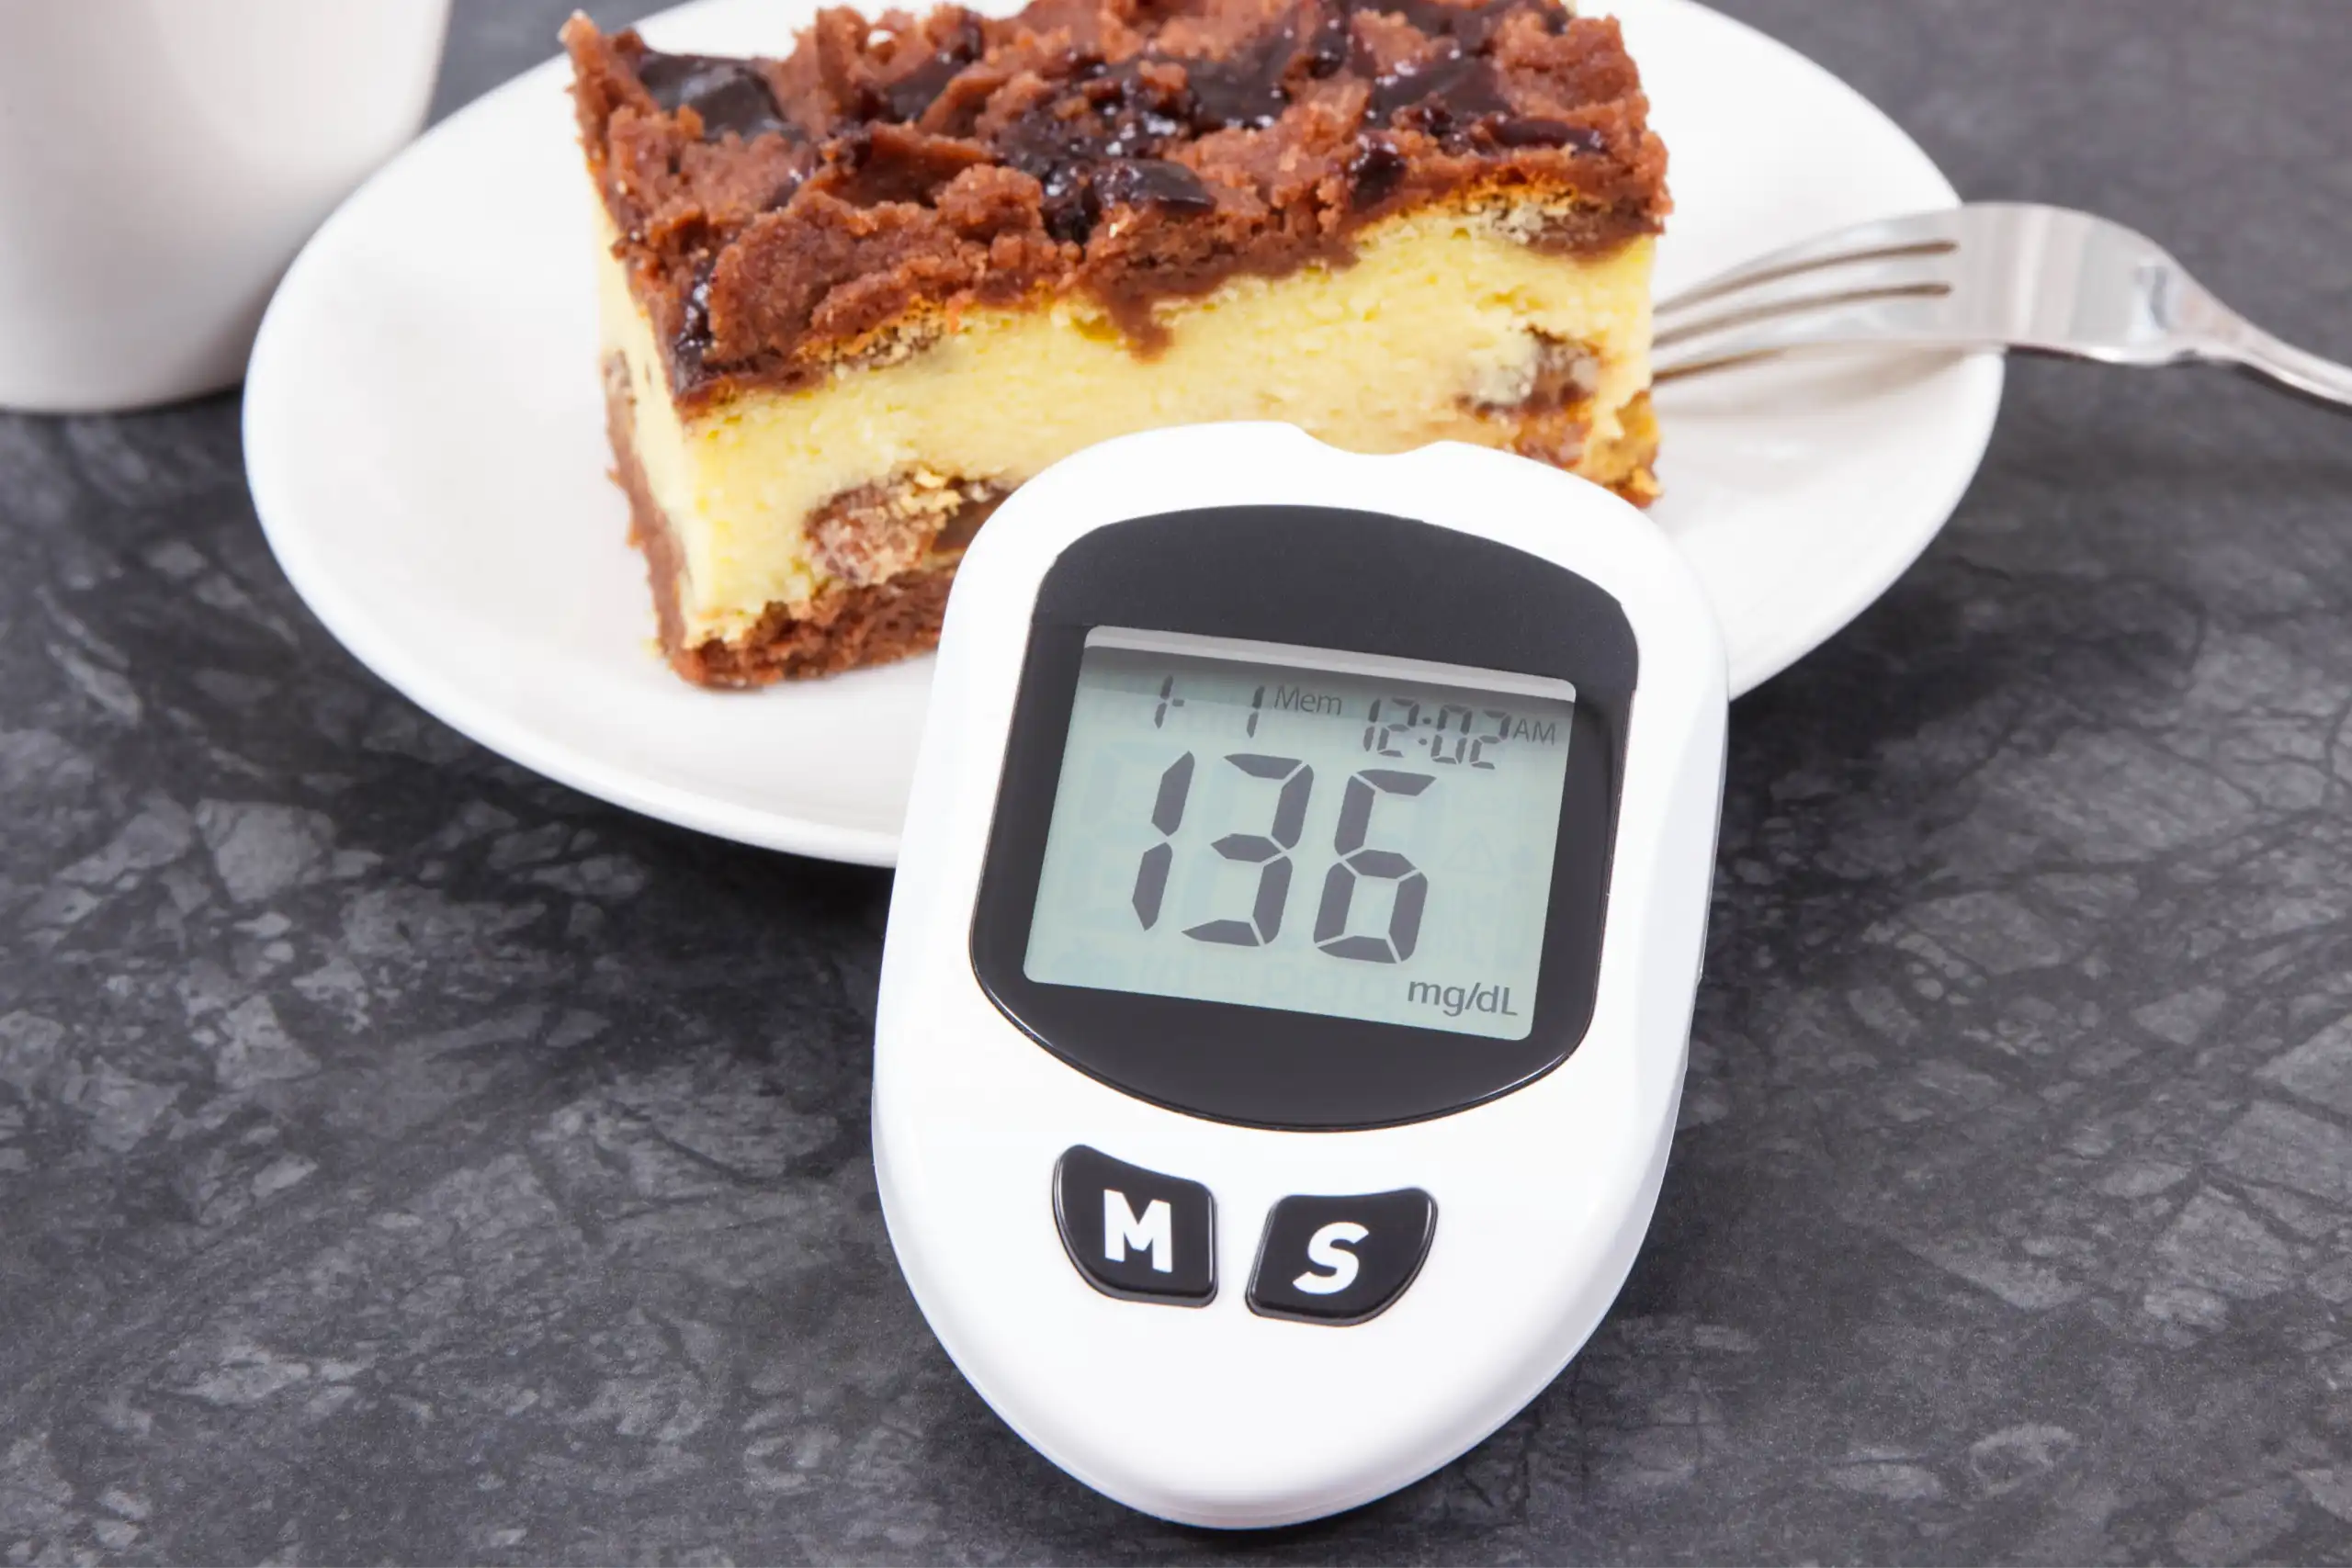 aparelho medidor de glicose apoiado em um prato com um doce enquanto afere um resultado.